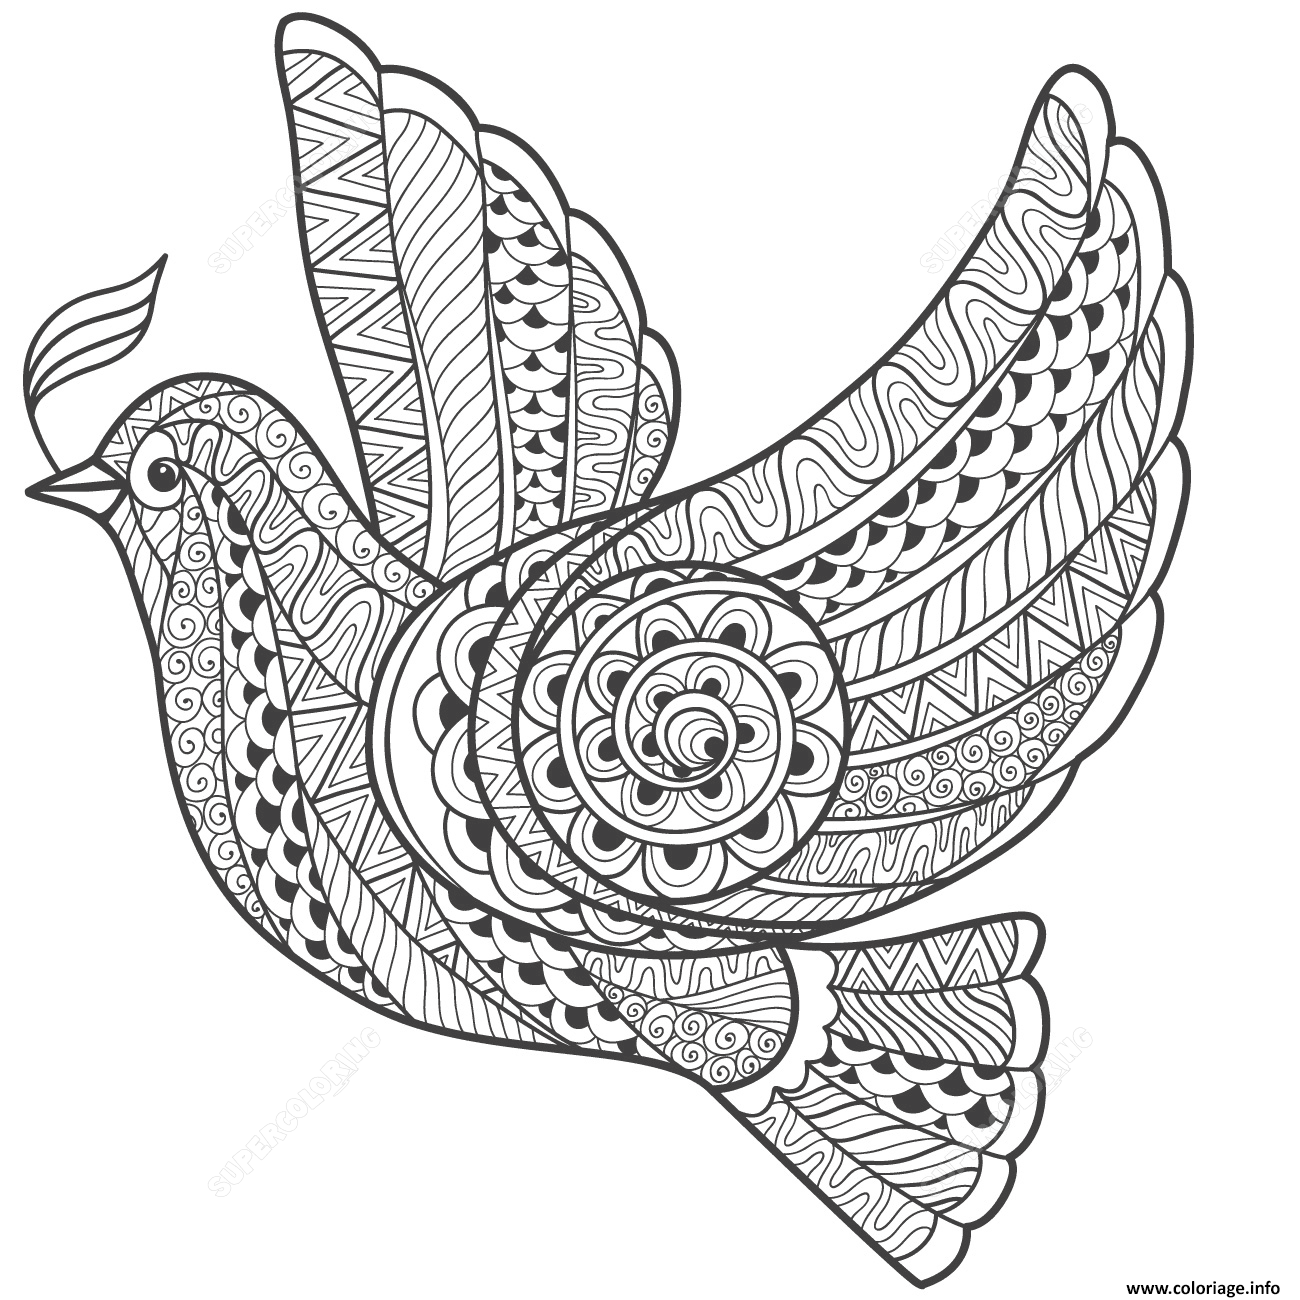 Dessin zentangle dove of peace adulte Coloriage Gratuit à Imprimer